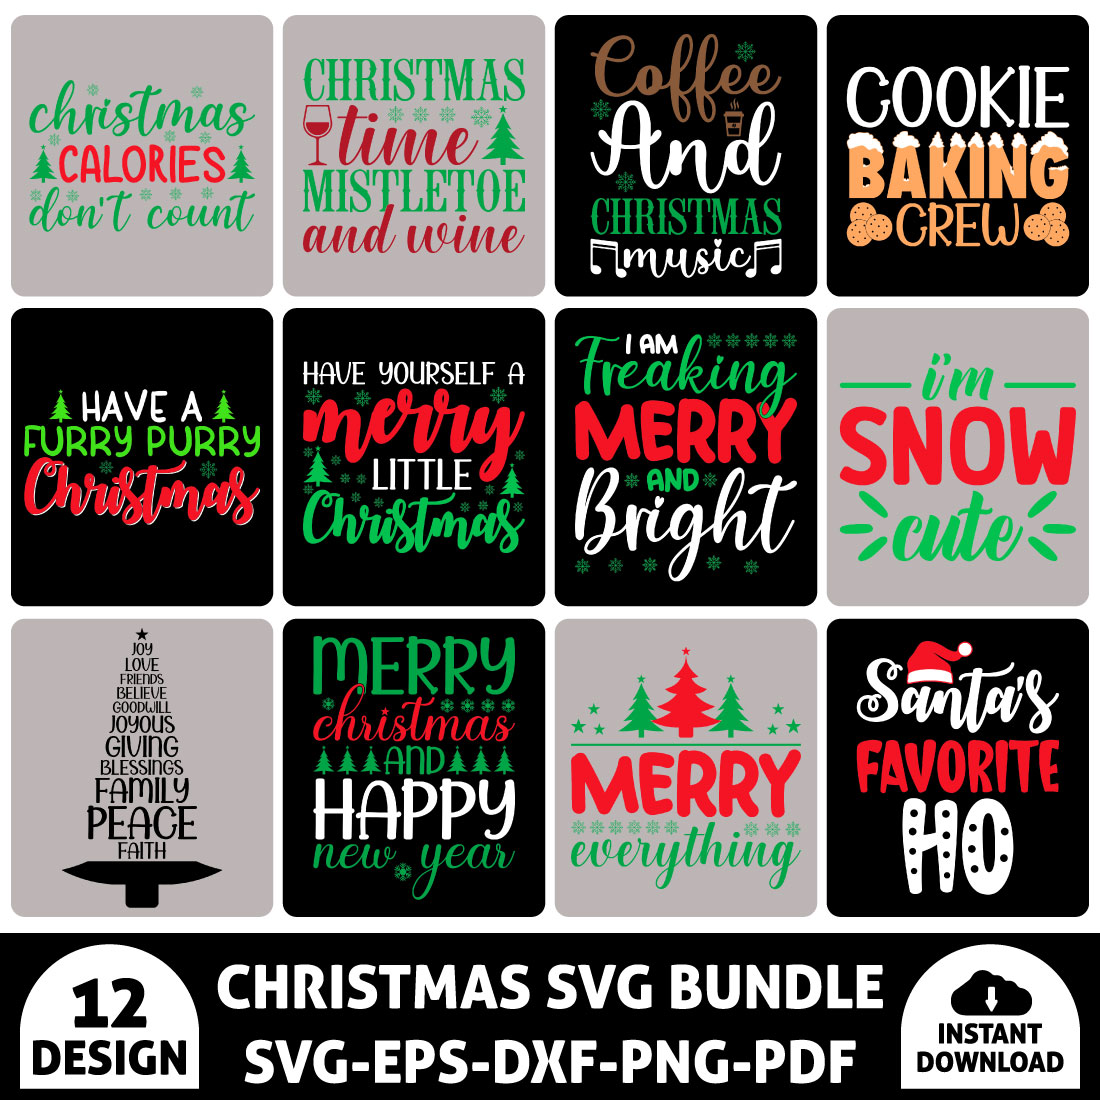 Christmas SVG Bundle preview image.